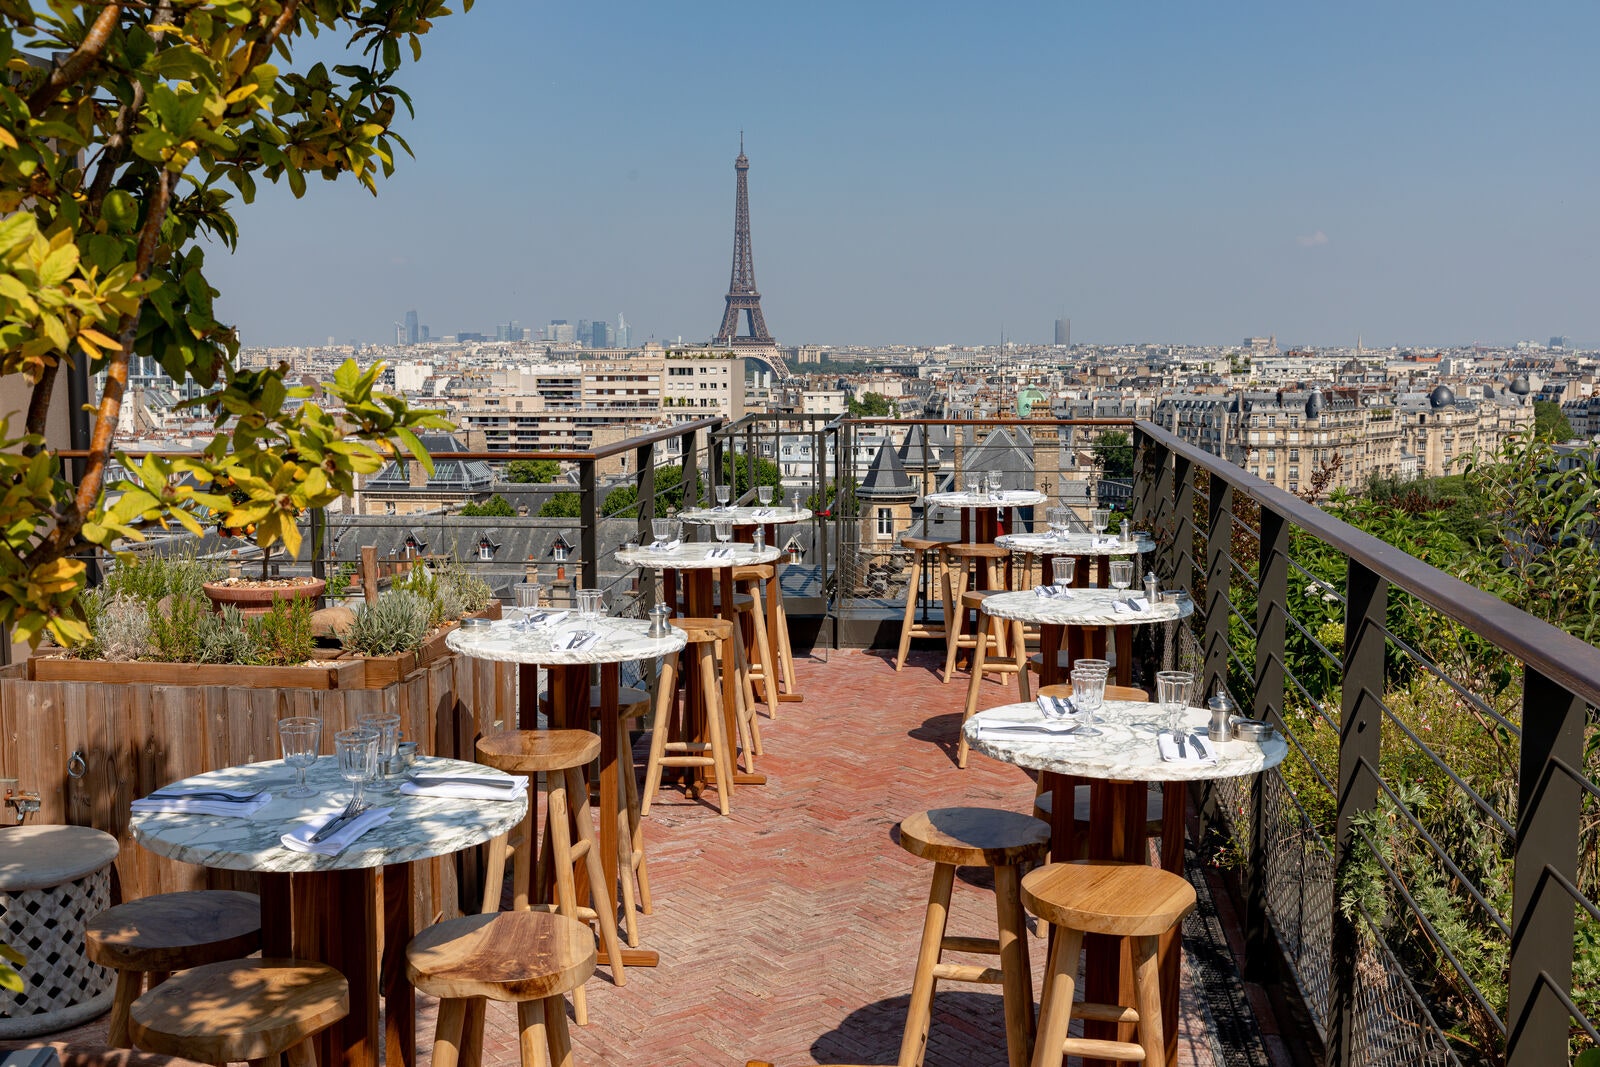 <p>Situé au cœur du XV<sup>e</sup> arrondissement, l'hôtel Villa M propose un rooftop bar et restaurant où déjeuner, <a href="https://www.admagazine.fr/galerie/restaurants-sensationnels-une-fois-vie?mbid=synd_msn_rss&utm_source=msn&utm_medium=syndication">dîner</a> ou prendre un verre avec une incroyable vue sur la tour Eiffel, la tour Montparnasse et le dôme des Invalides. Le tout, dans un bain de verdure, entouré d'arbres fruitiers et de plantes aromatiques. <em>« Un cocon de nature au design oxygénant »</em>, revendiquent les propriétaires.</p> <p><strong>Ouvert dès à présent</strong>. Sur réservation. Cocktails : 18 euros. Verres de vin à partir de 15 euros. Plats à partir de 16 euros.</p> <p>24-30, bd Pasteur, 75015 Paris.</p> <div class="callout"><p><a href="https://www.hotelvillam-paris15.com/restaurant-bar" title="Réserver">Réserver</a></p> </div><p>Recevez les meilleures infos sur la décoration, le design, l'art, l'architecture et l'art de vivre directement par e-mail.</p><a href="https://newsletter.admagazine.fr?sourceCode=msnsend">S'inscrire ici</a>